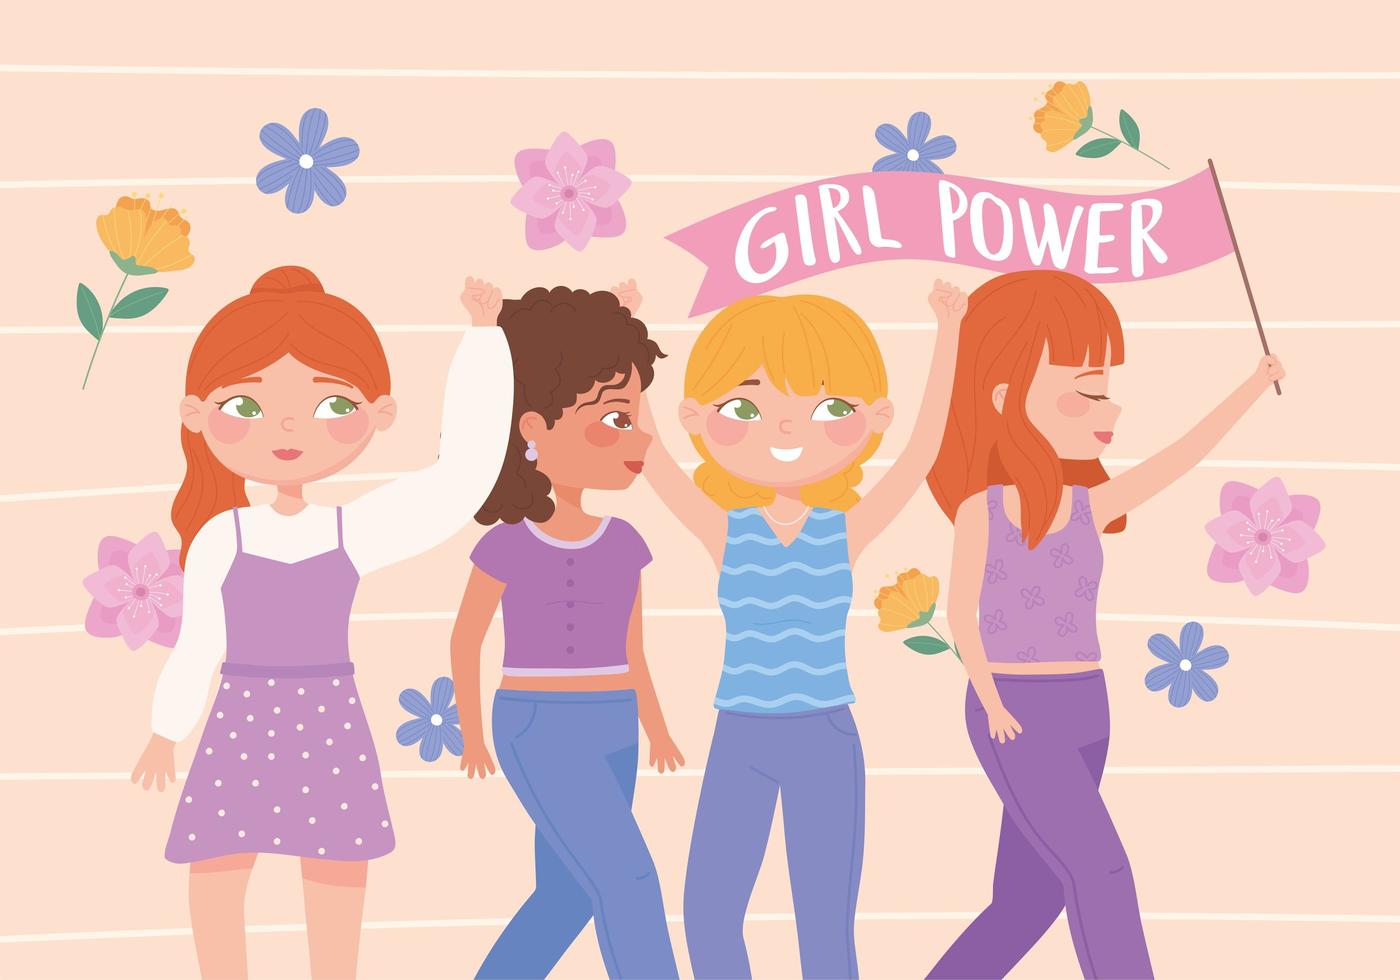 día de la mujer, poder de las niñas, ideas feministas, empoderamiento de la mujer vector